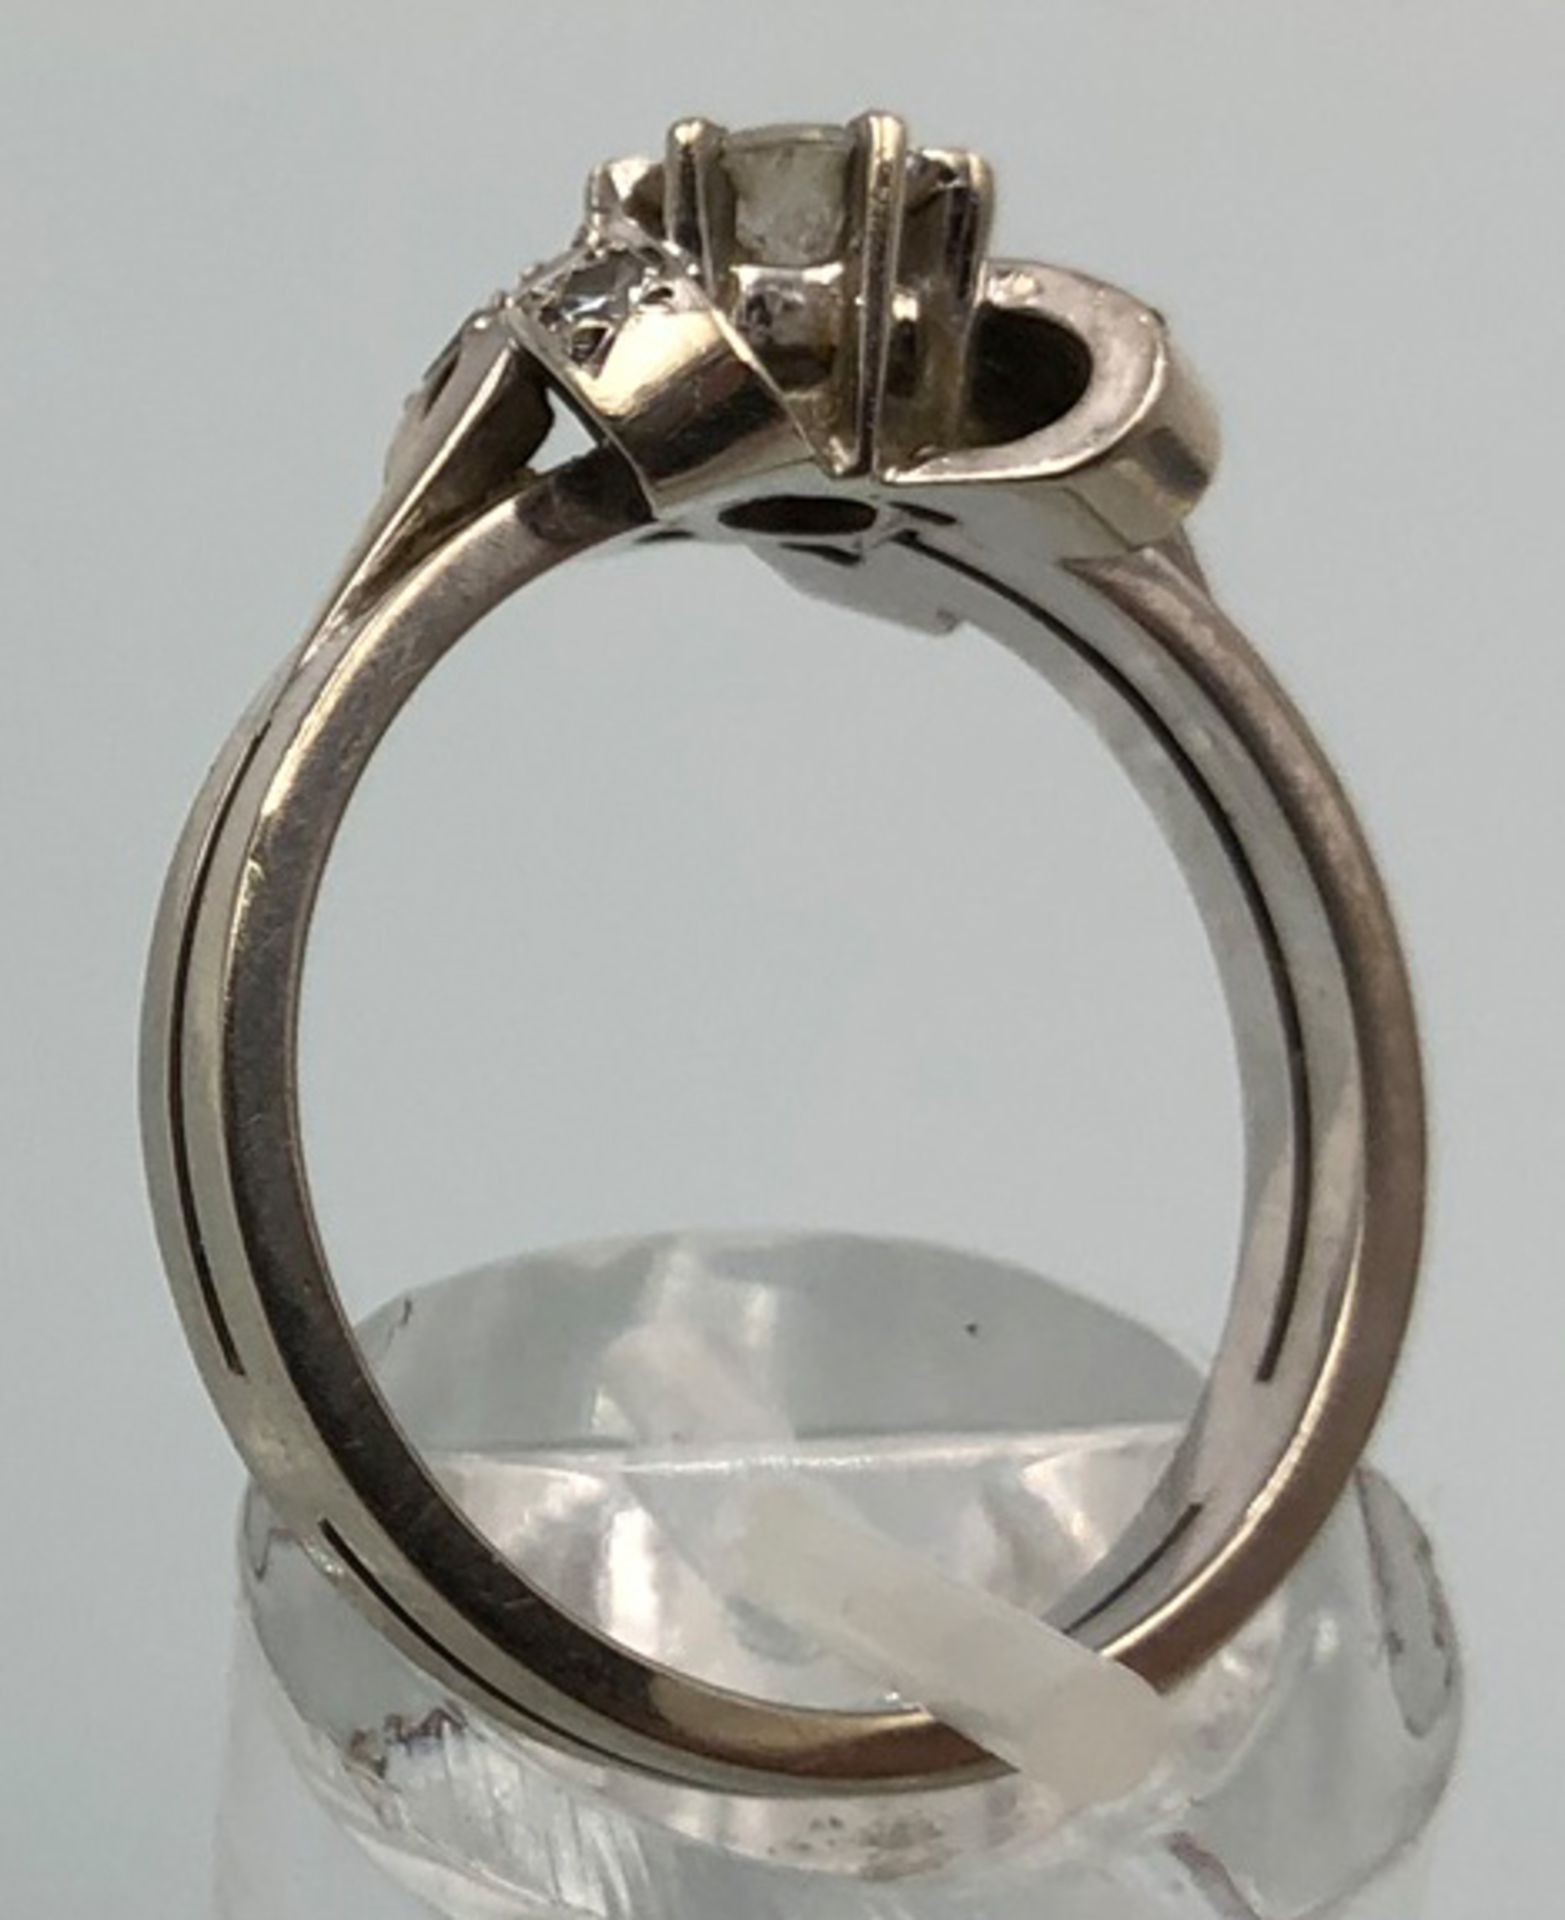 Weiß Gold 585. Ring mit Brillanten.4,0 Gramm Gesamtgewicht. Der mittige Diamant 4,48 mm Durchmesser, - Bild 2 aus 13